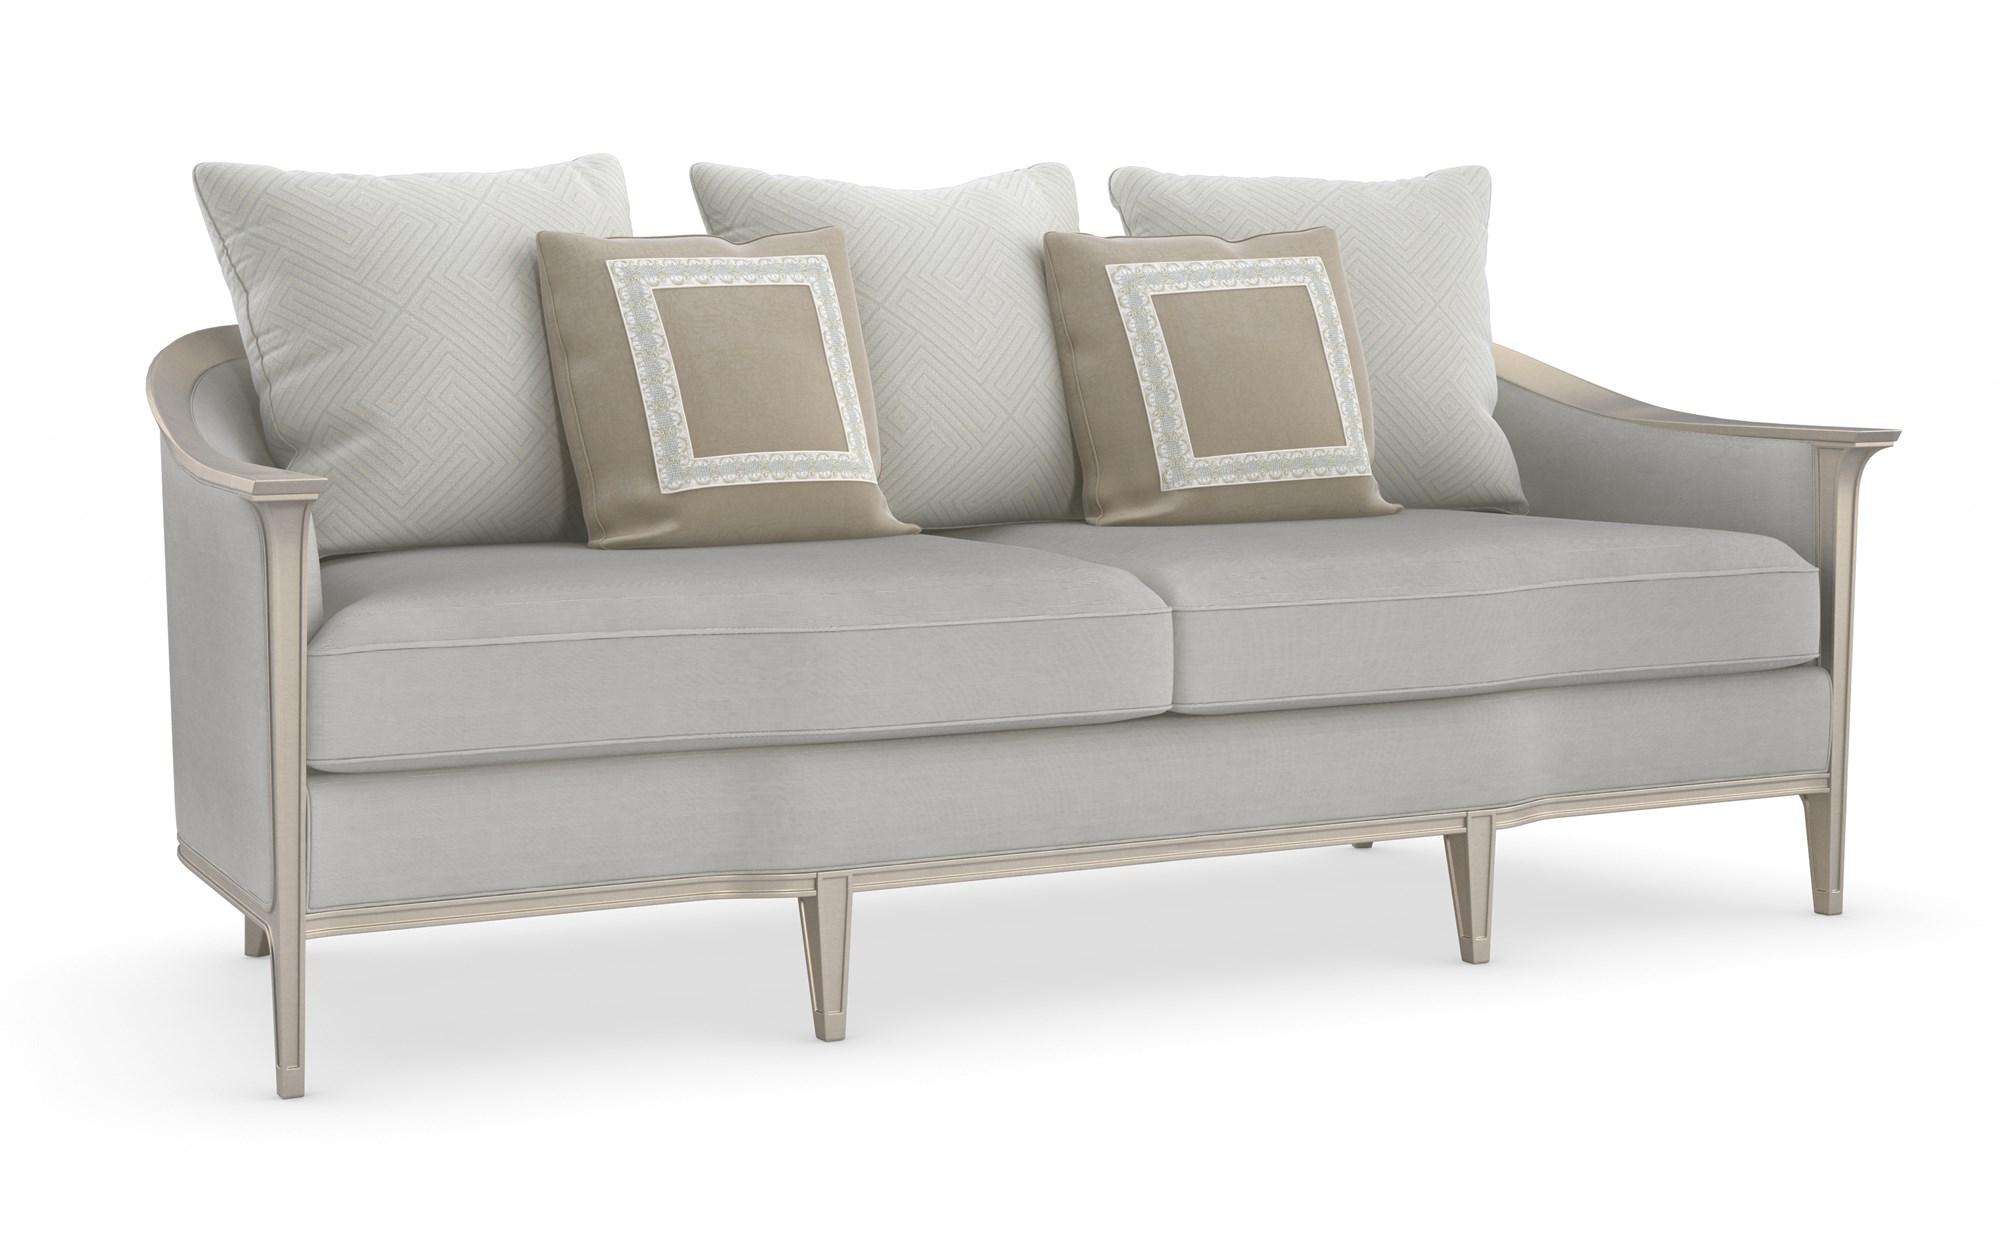 Traditional Sofa EAVES DROP UPH-419-111-B in Light Gray Velvet